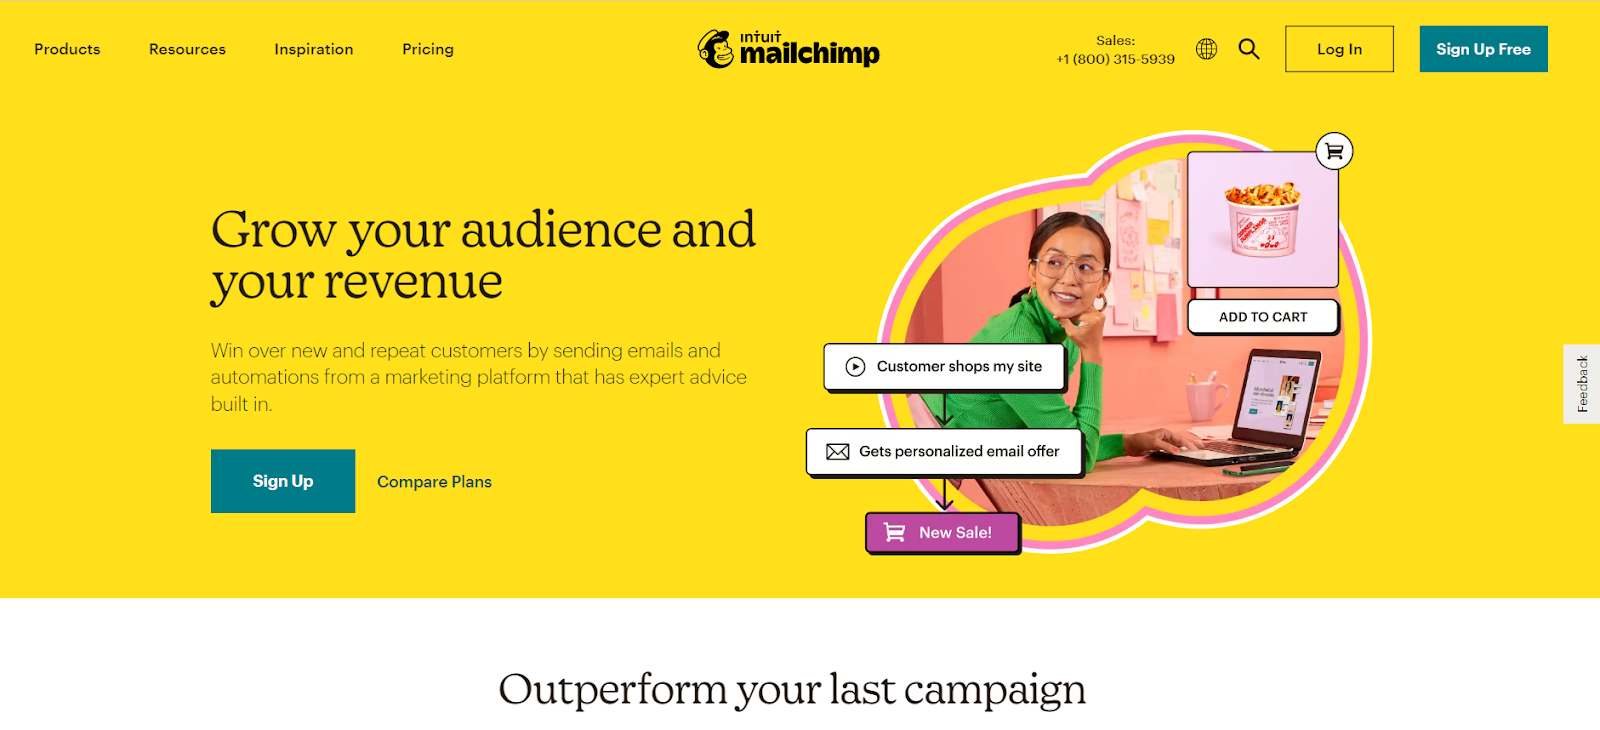 mailchimp marketing app on shopify